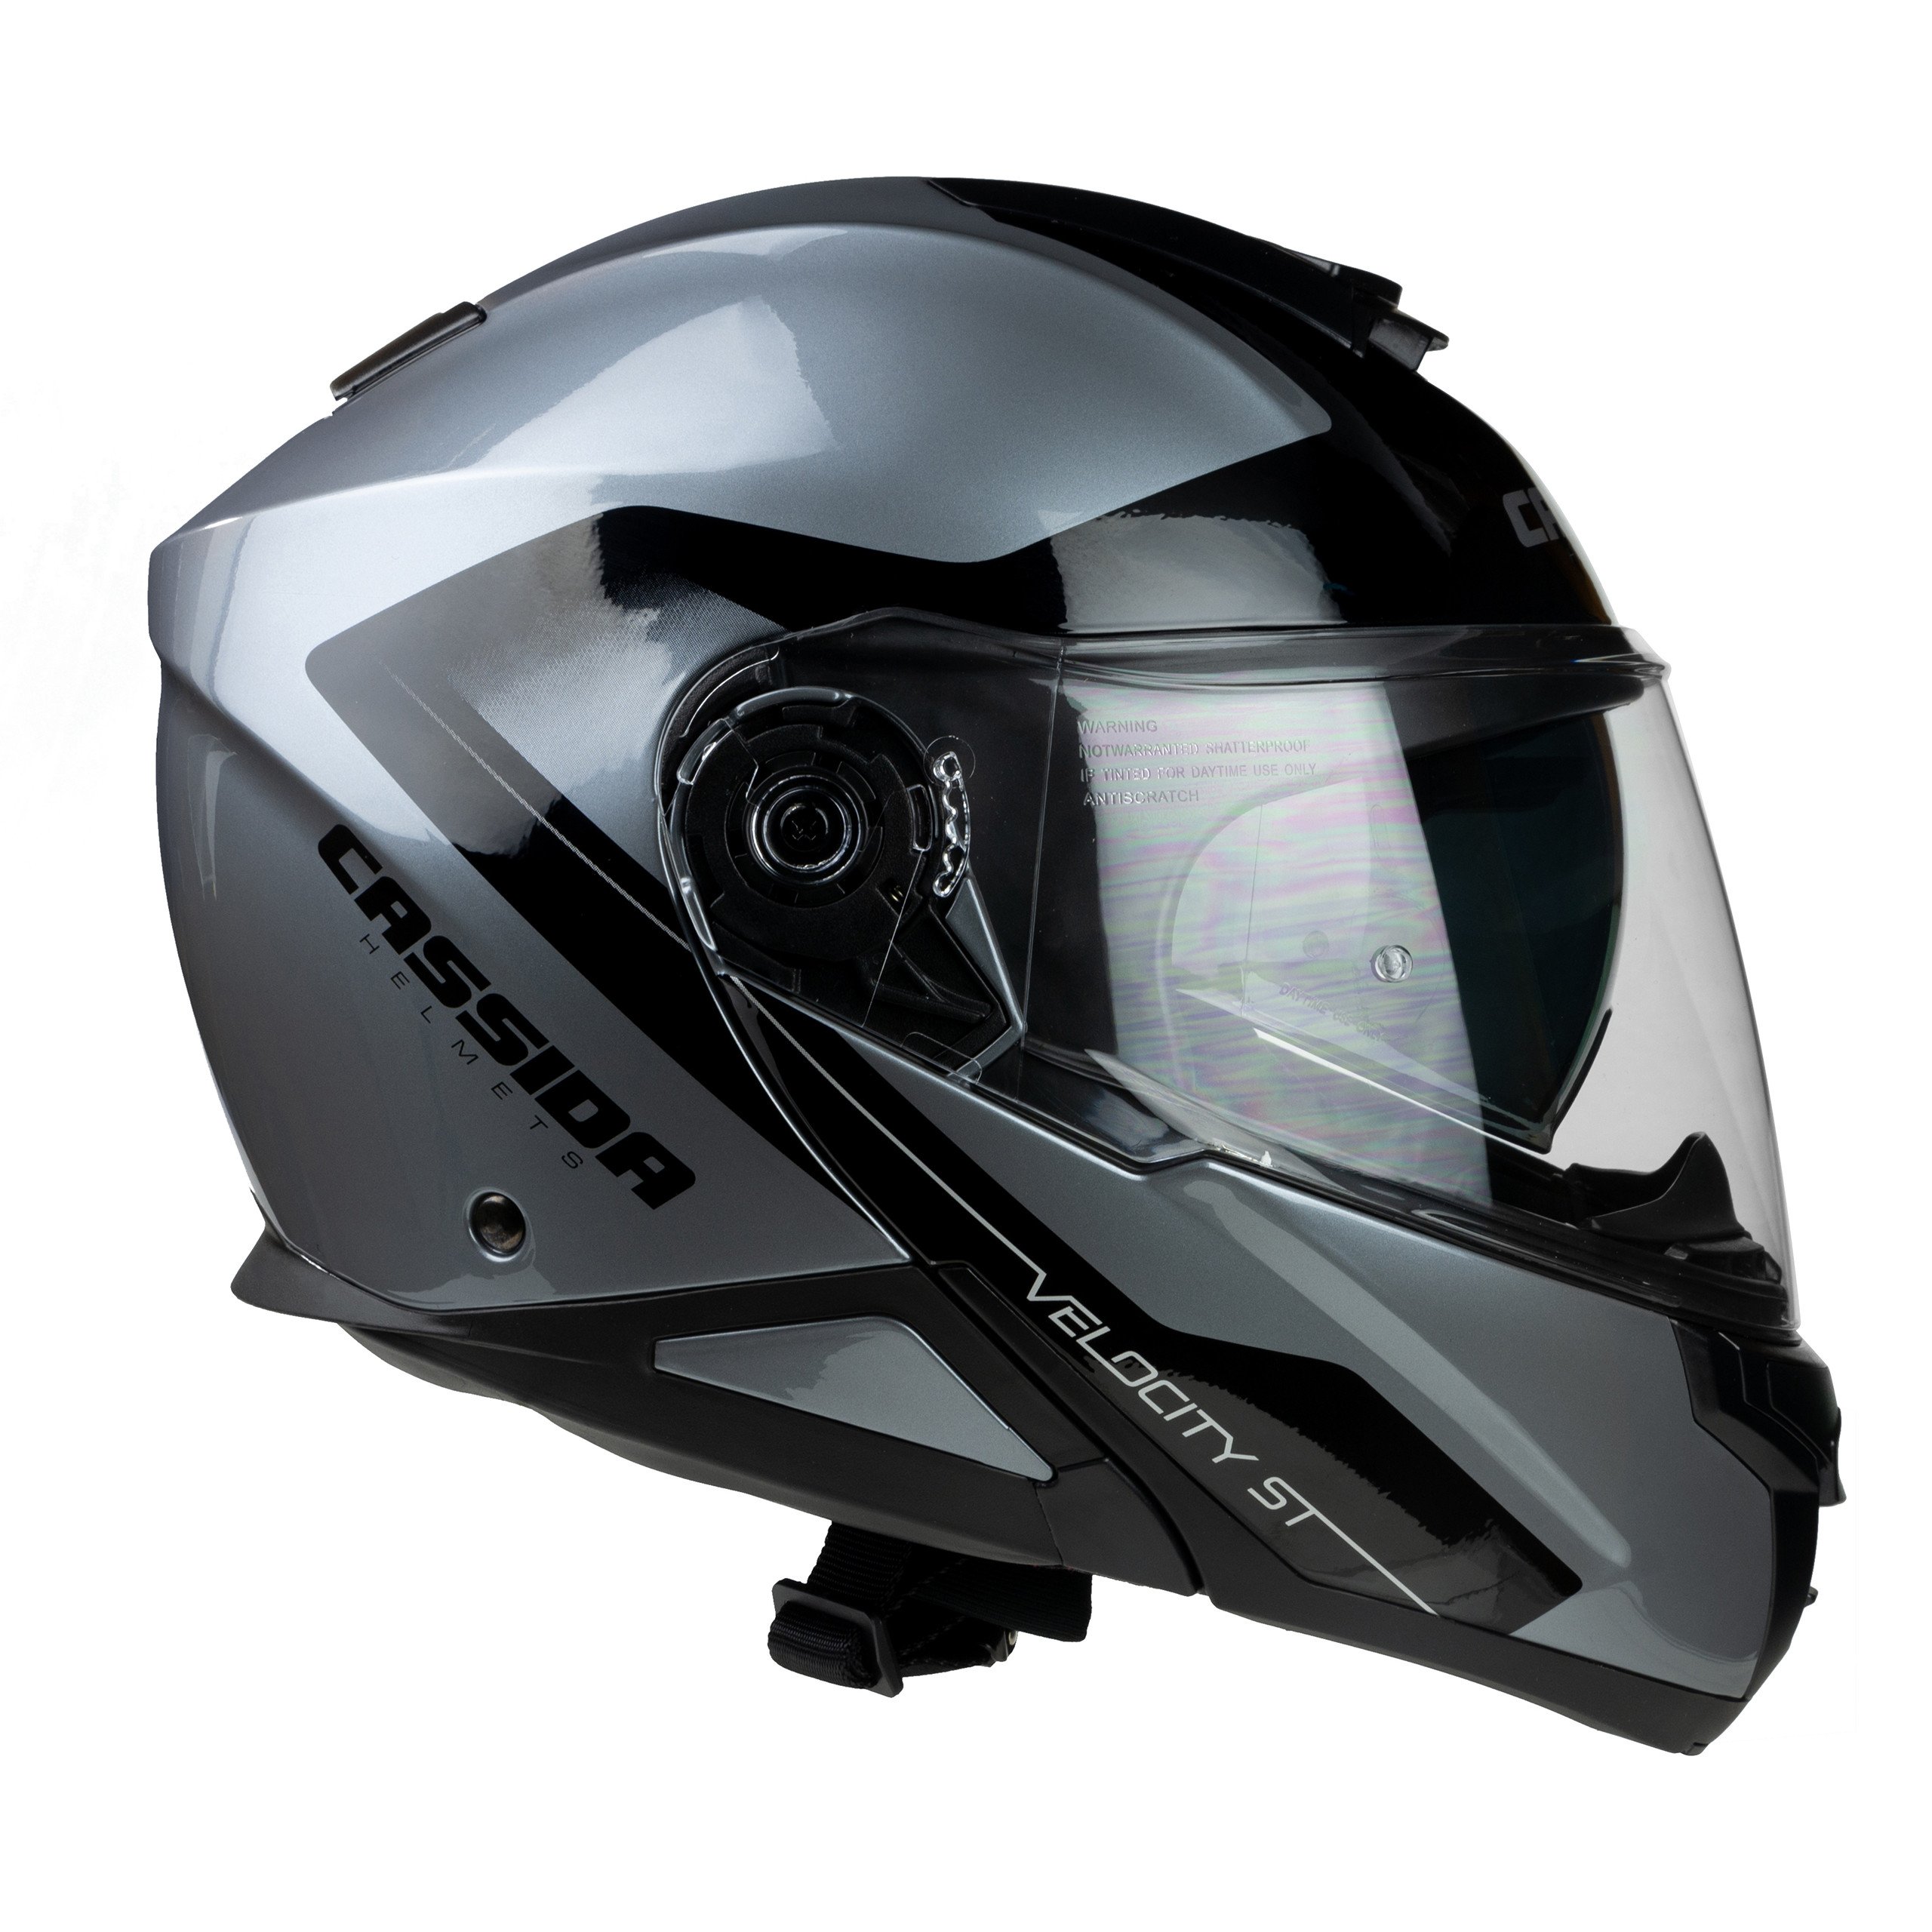 Obrázek produktu Výklopná moto helma CASSIDA VELOCITY ST stříbrná/černá Vel: XXL Výprodej zboží